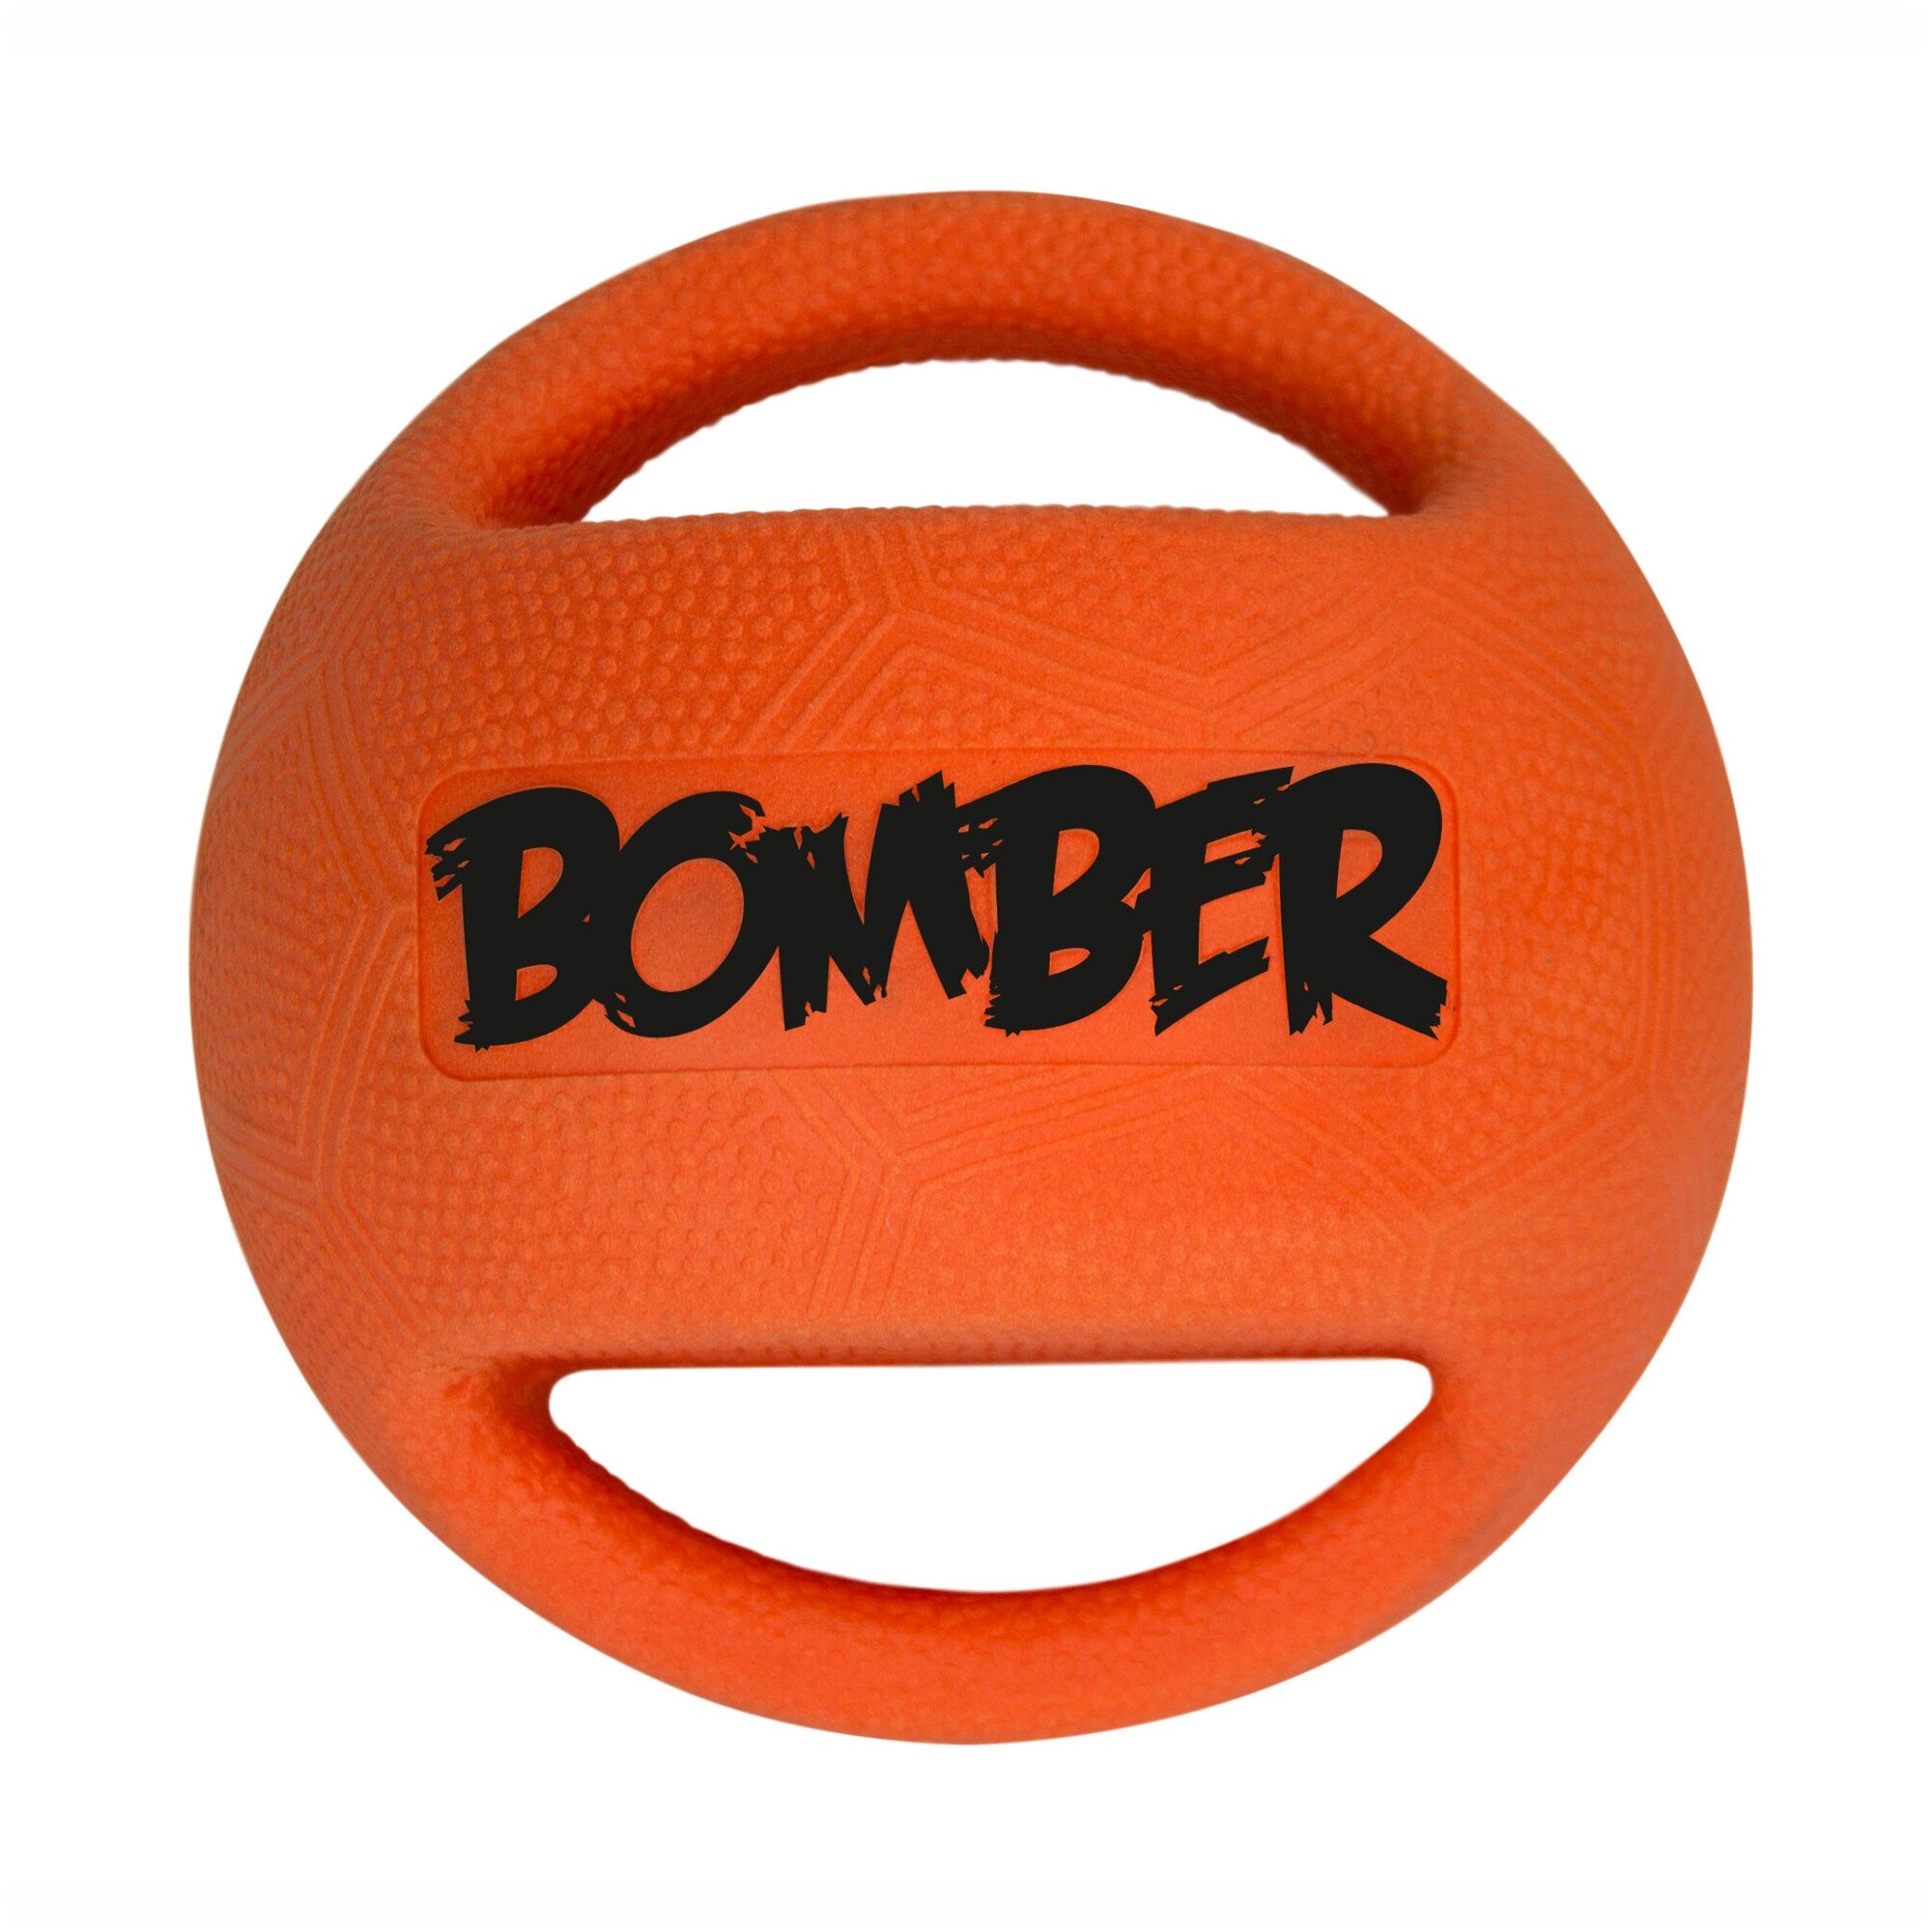 Игрушка серия Bomber, Мяч Бомбер малый оранжевый, диаметр 8см Hagen